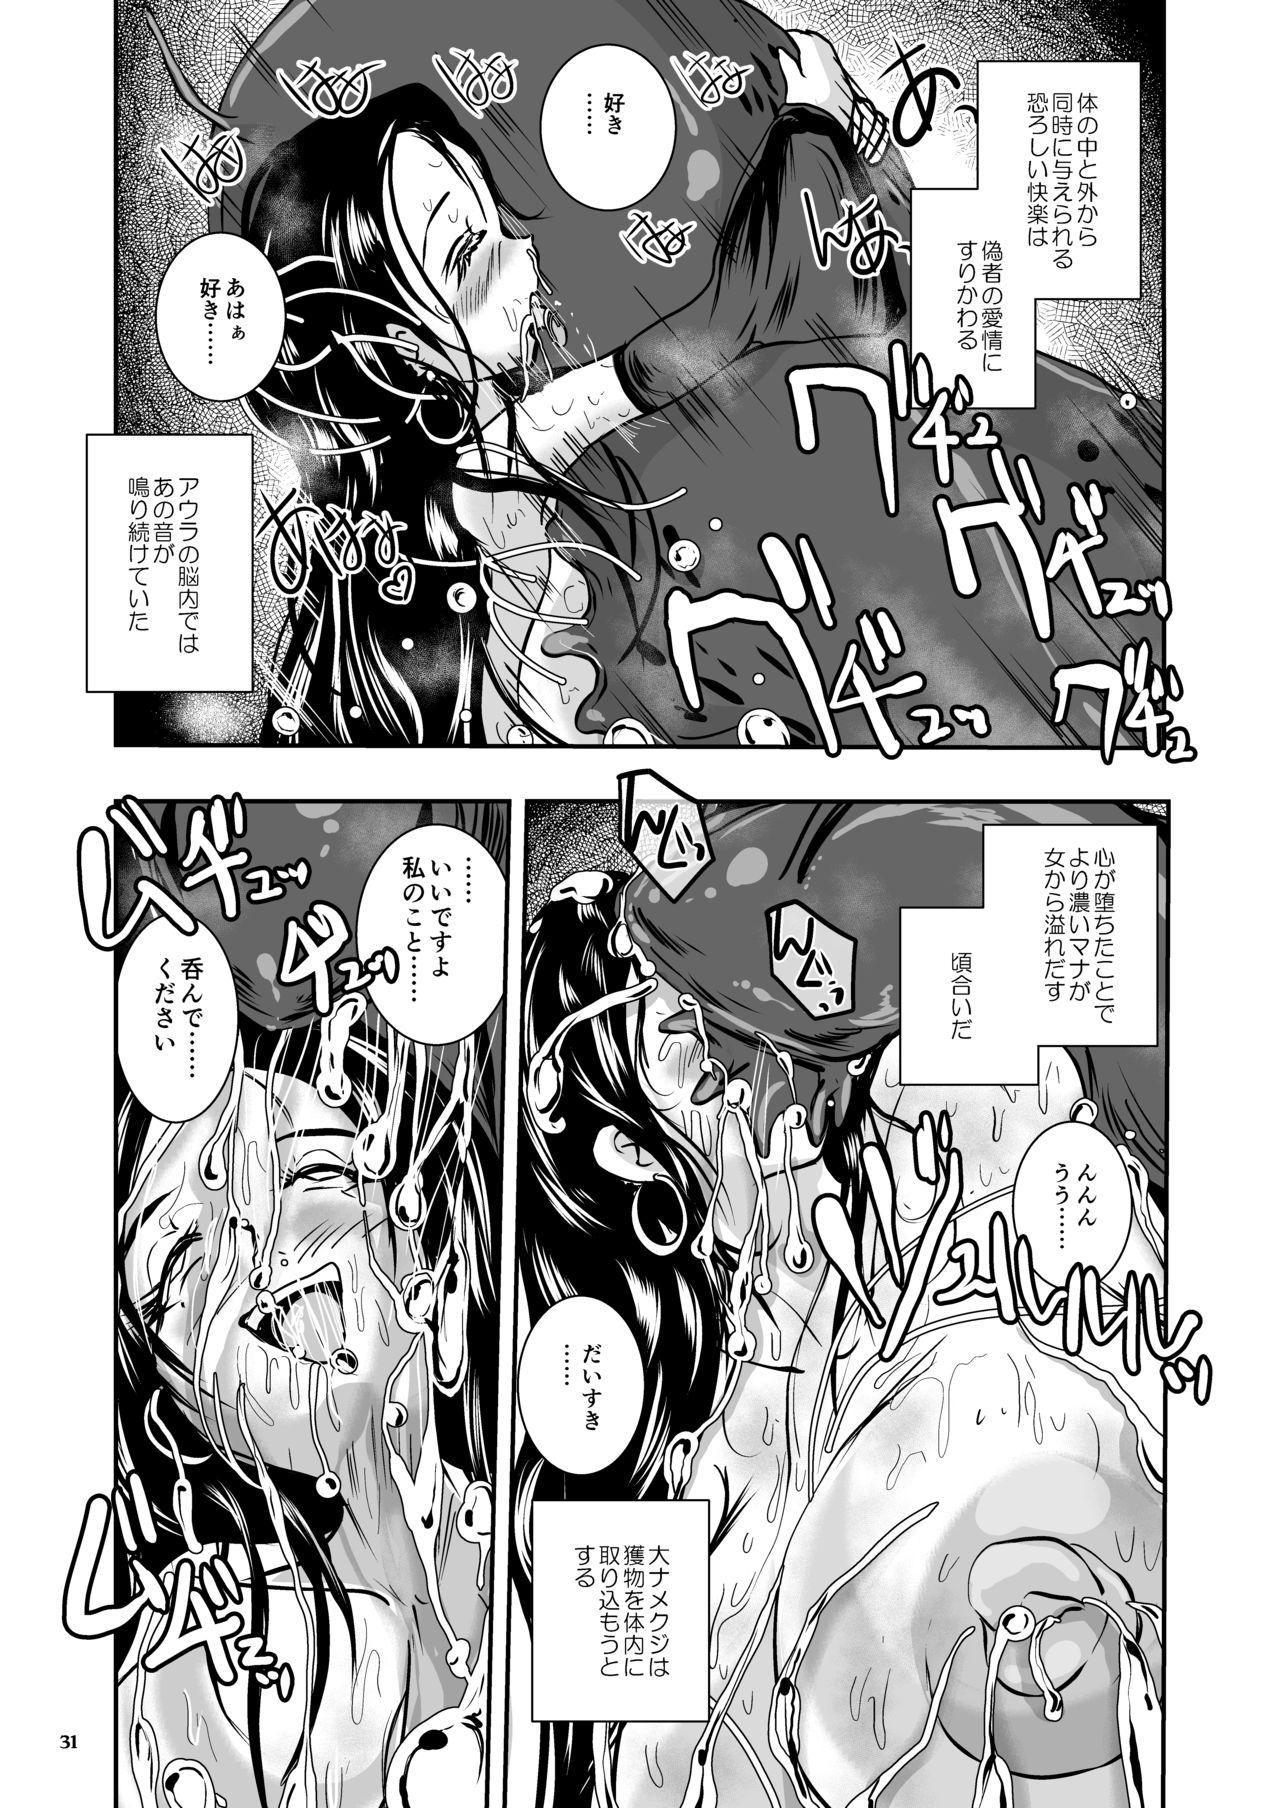 Oonamekuji to Kurokami no Mahoutsukai - Parasitized Giant Slugs V.S. Sorceress of the Black Hair as Aura 120